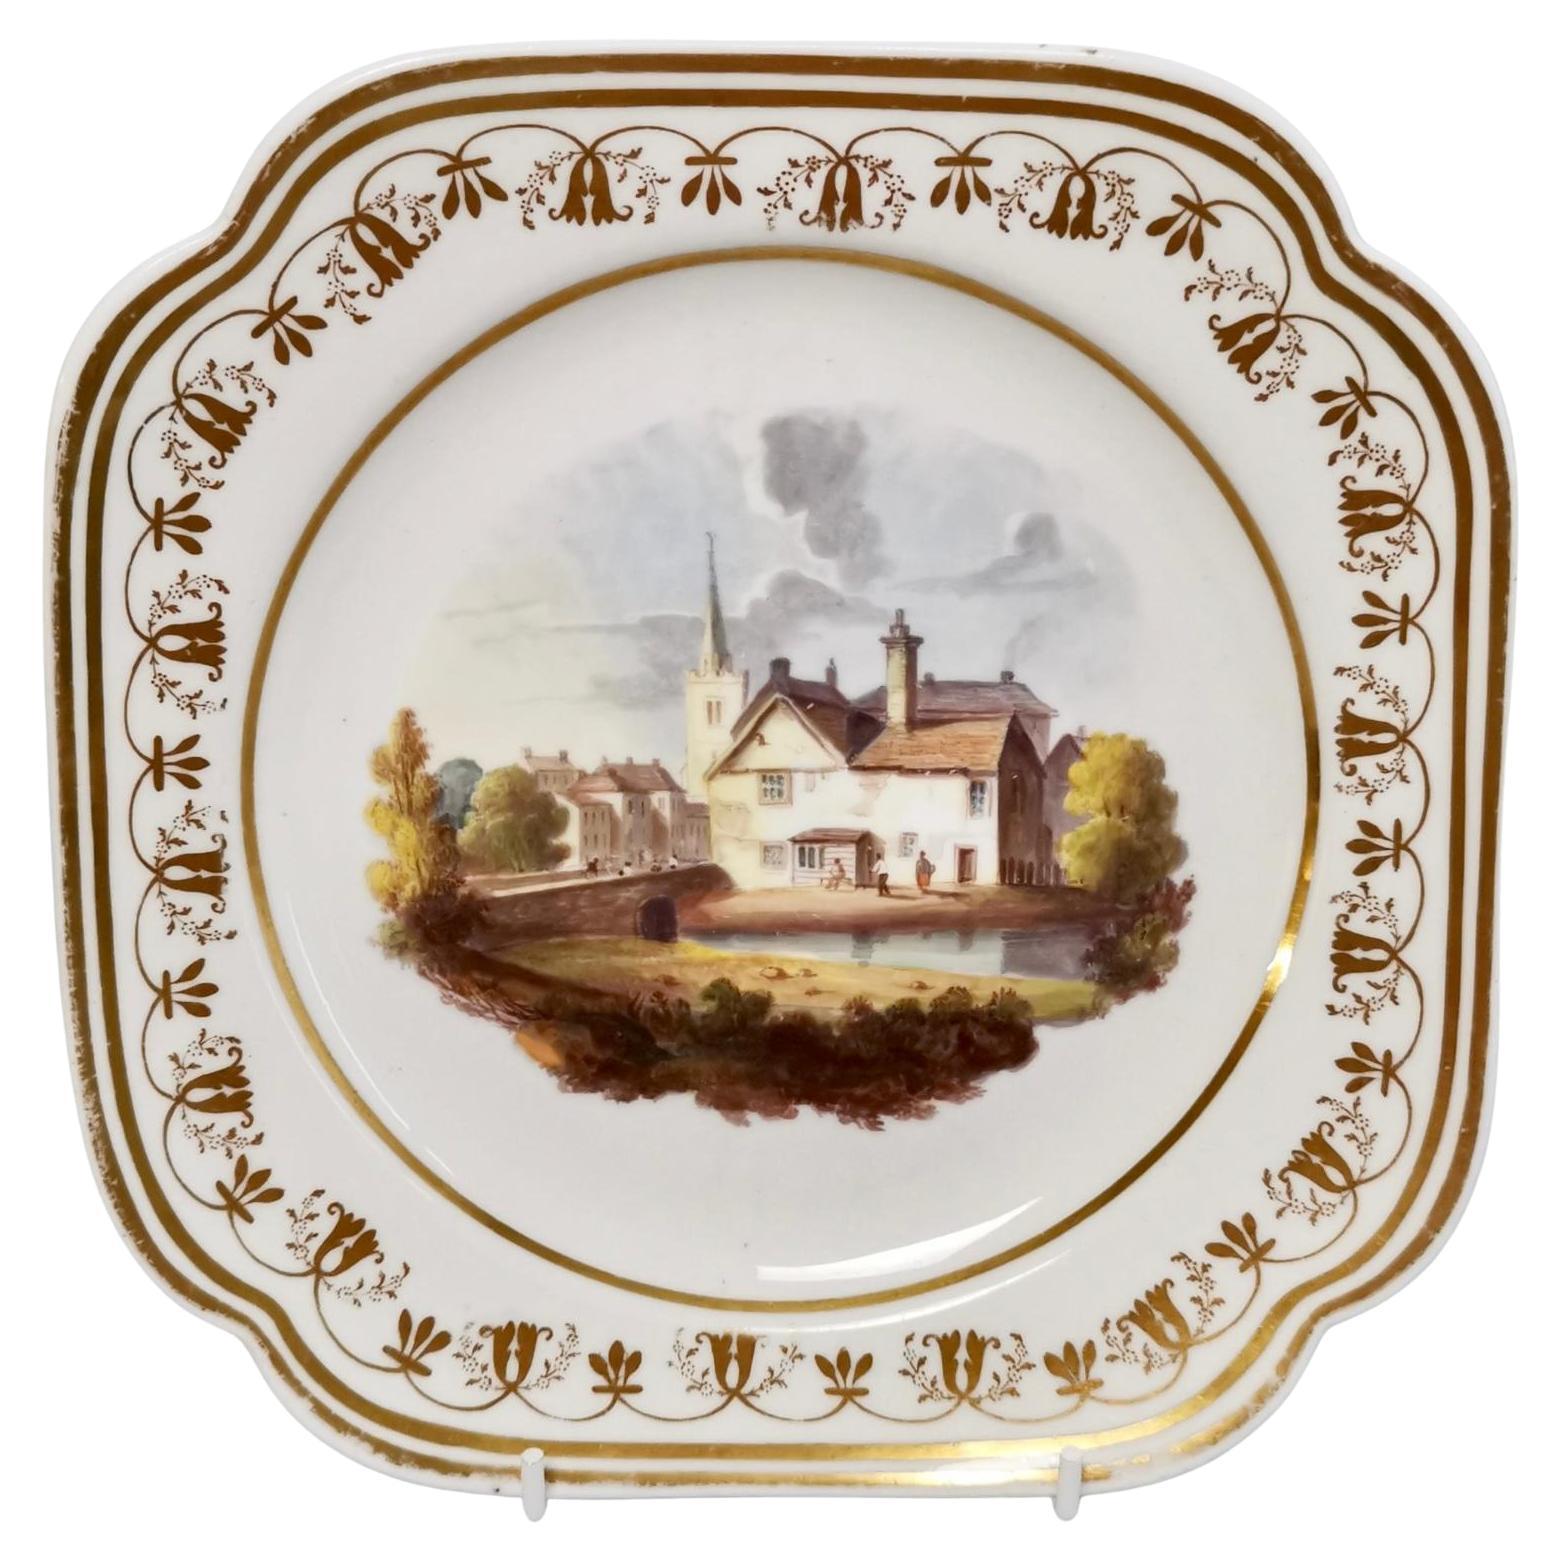 Spode Felspar Porcelain Plate, Landscape Painting, Regency ca 1822